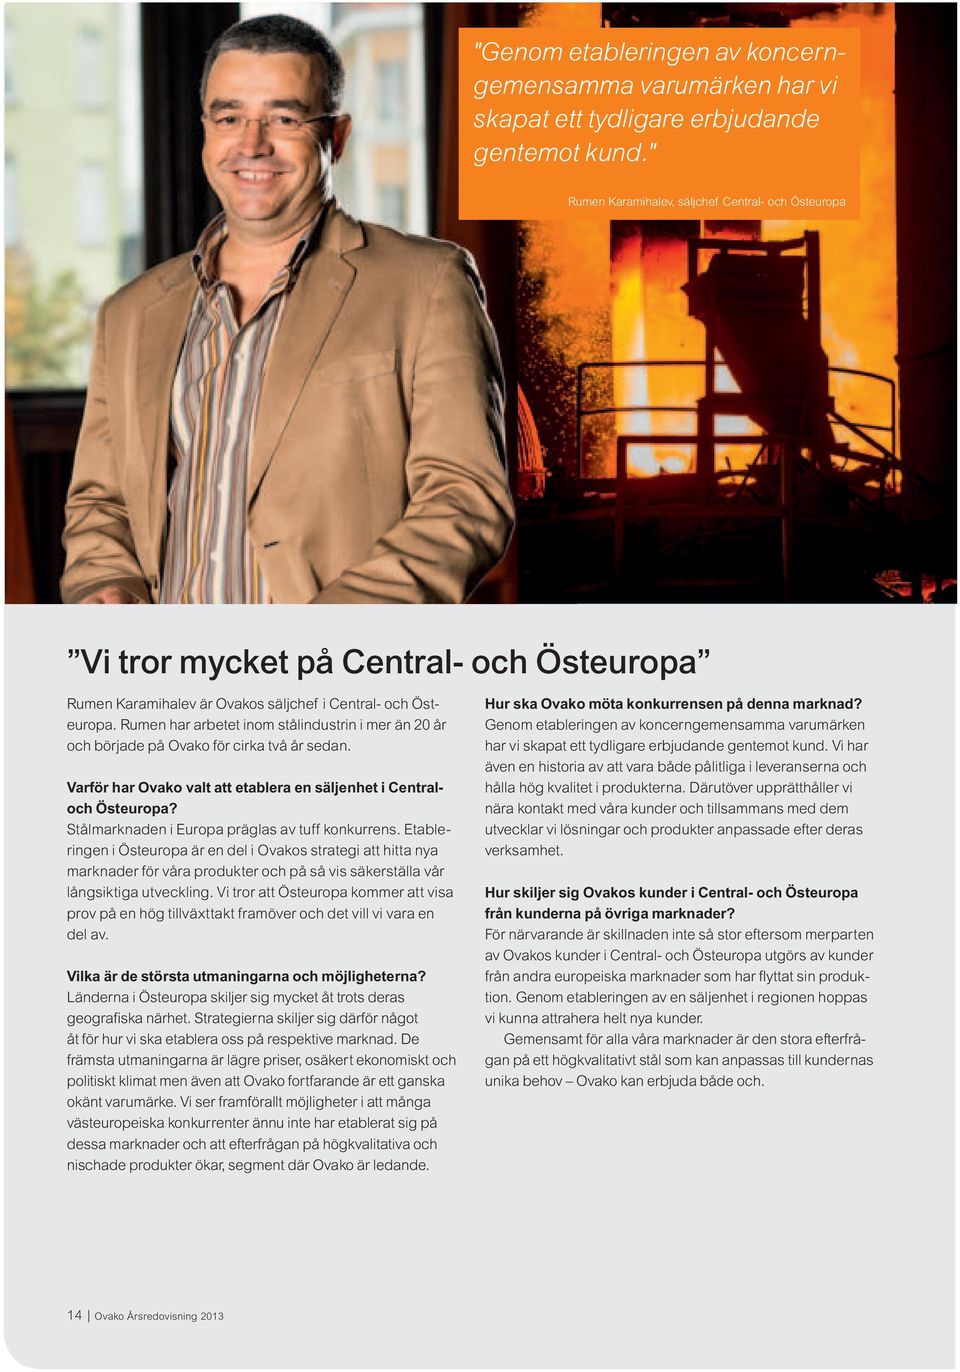 Rumen har arbetet inom stålindustrin i mer än 20 år och började på Ovako för cirka två år sedan. Varför har Ovako valt att etablera en säljenhet i Centraloch Östeuropa?